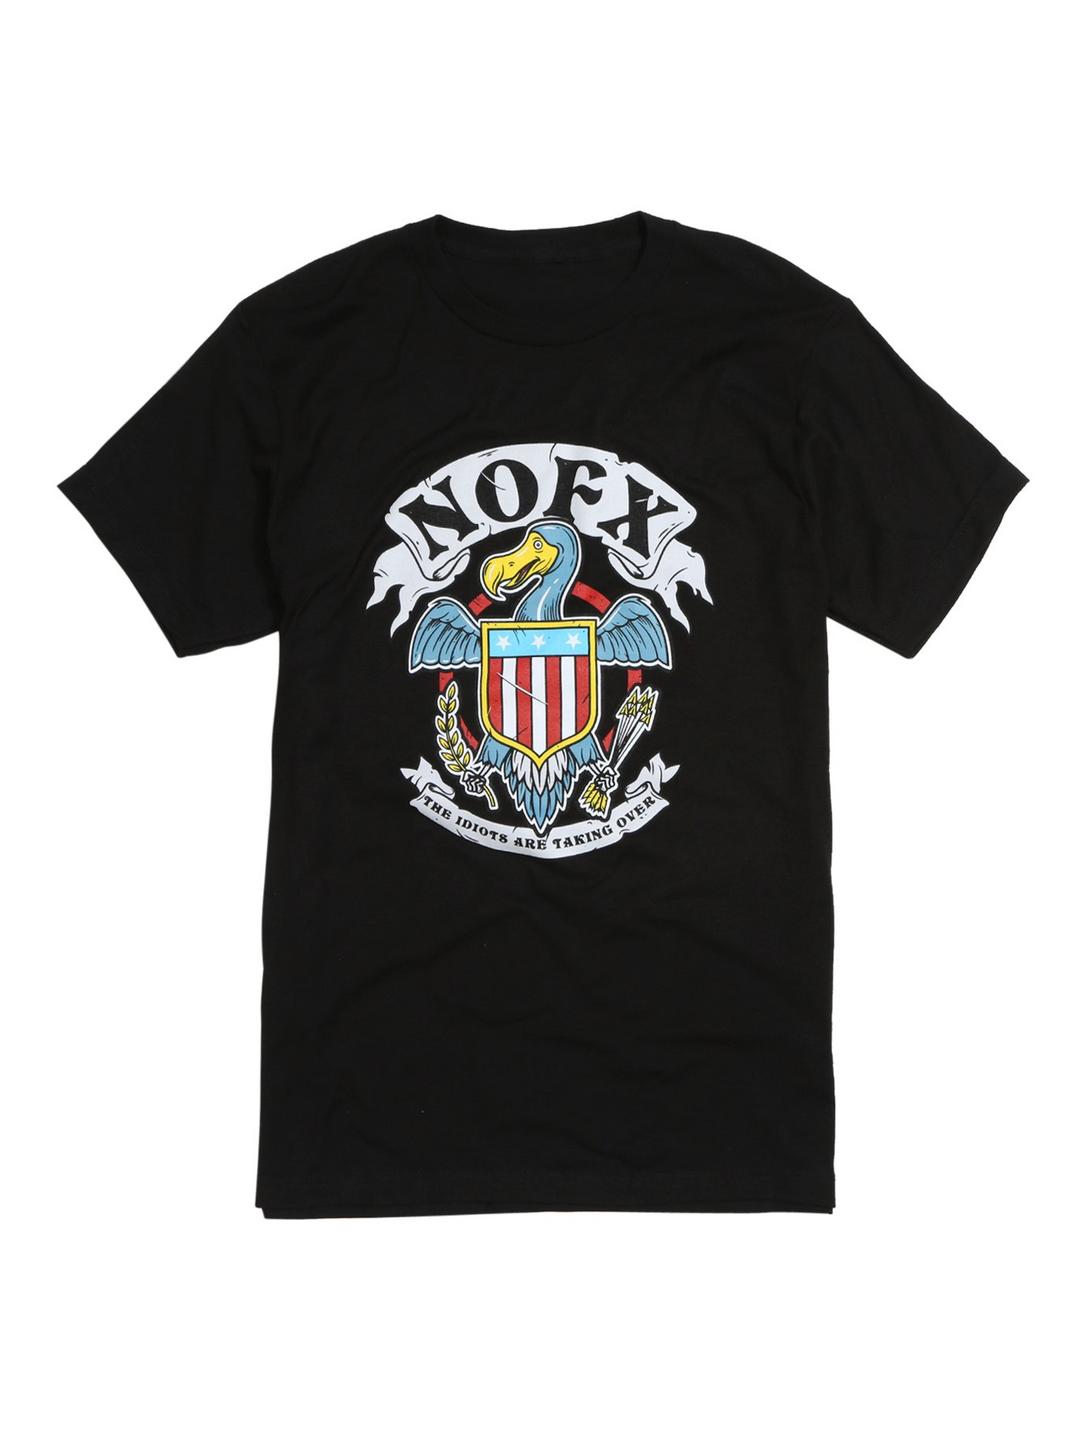 NOFX Idiots Dodo T-Shirt, BLACK, hi-res